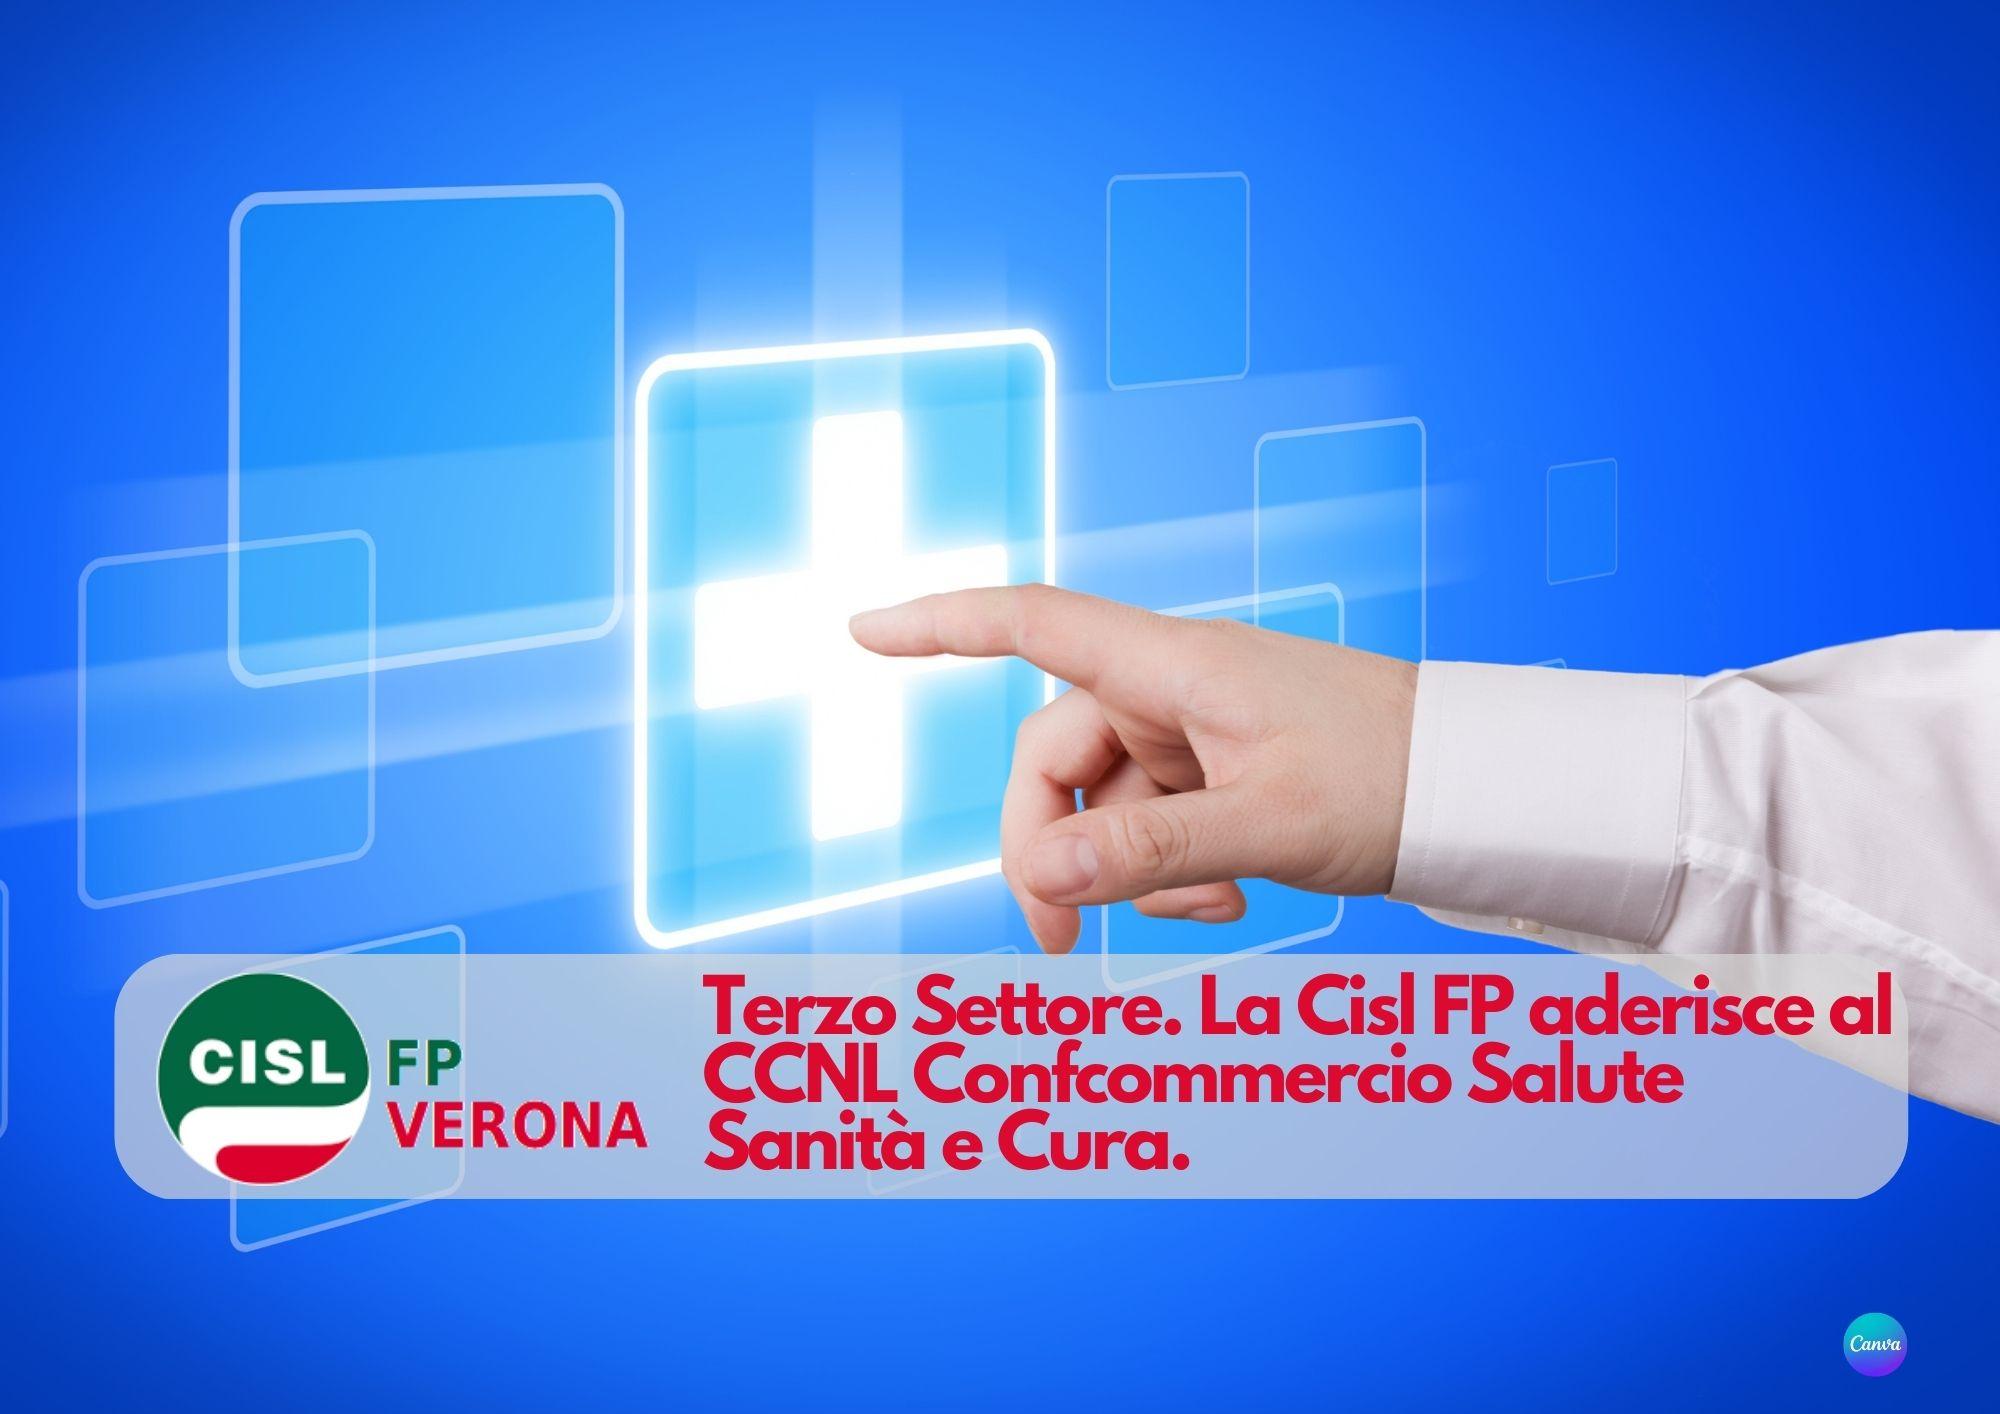 CISL FP Verona. Terzo Settore. La Cisl FP aderisce al CCNL Confcommercio Salute Sanità e Cura.